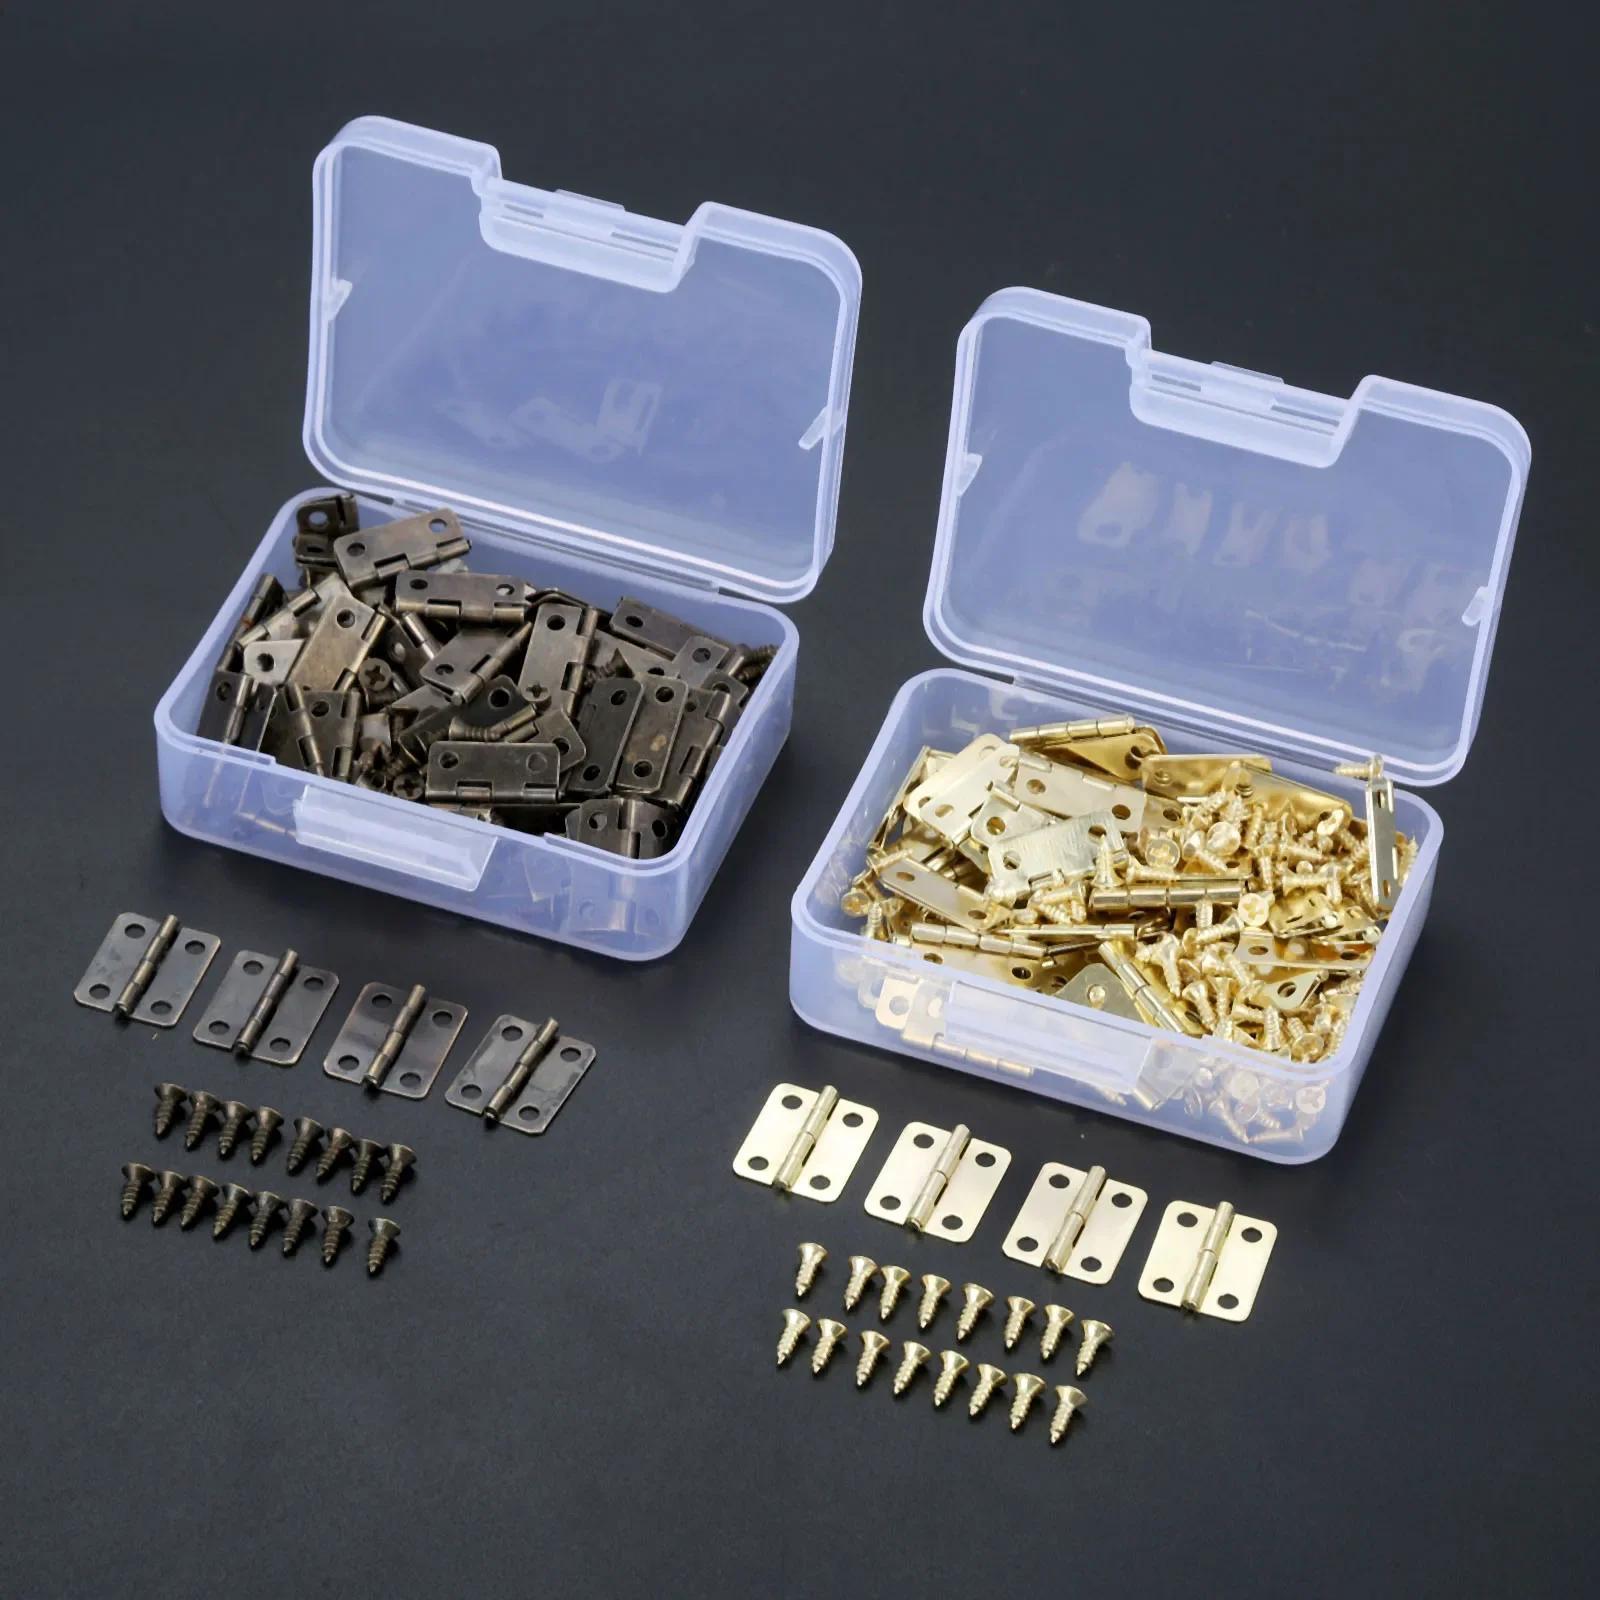 Bronze Mini Hinges Retro Brass Hinges Replacement Screws - Temu